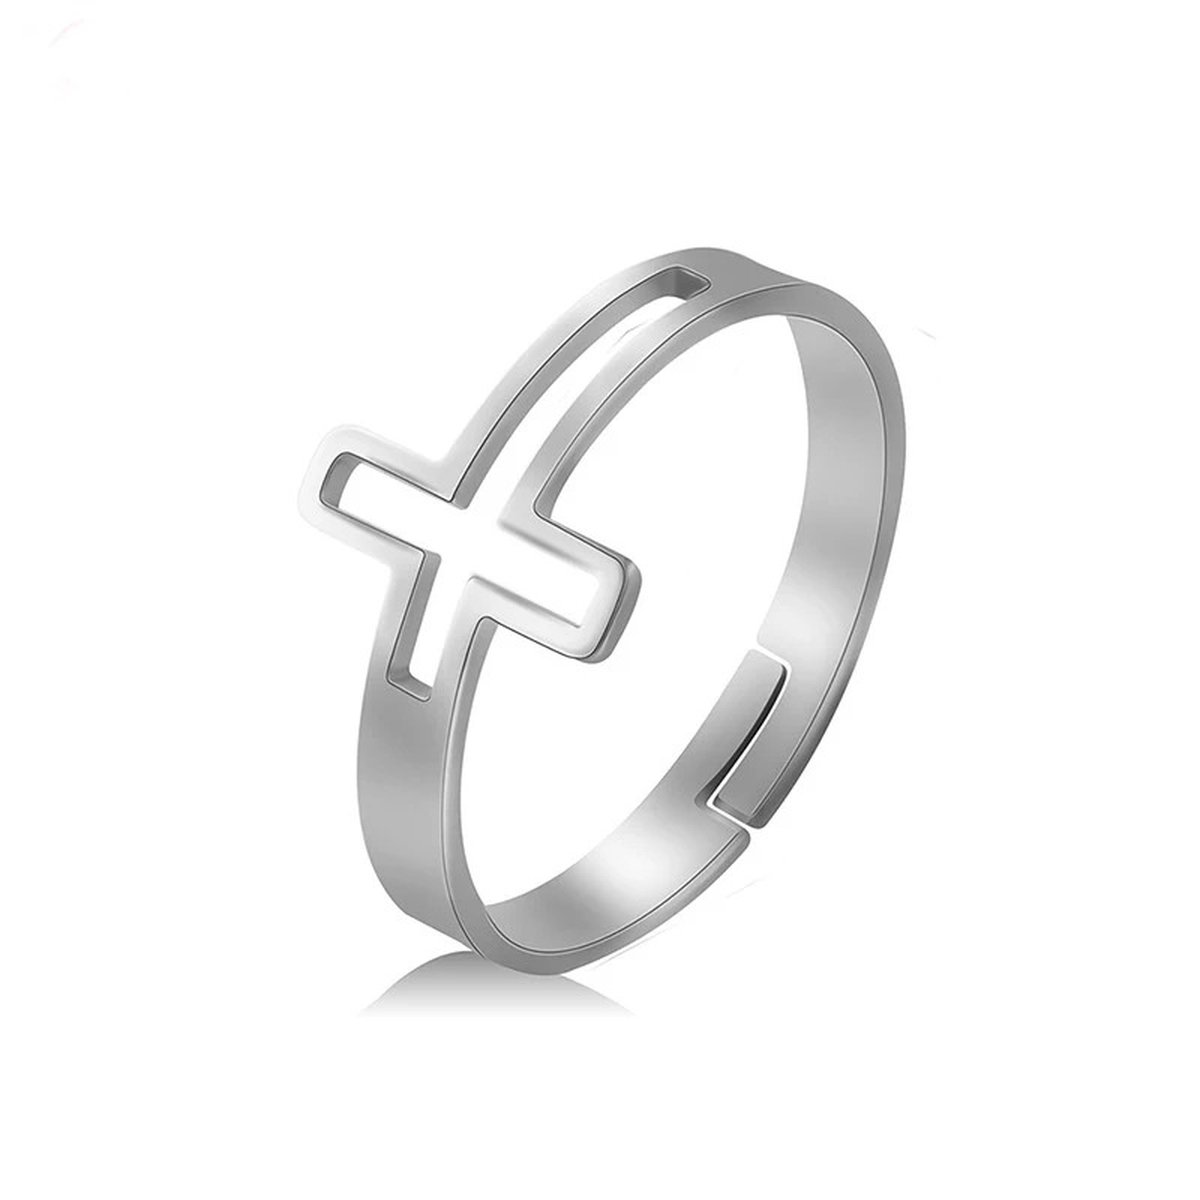 Christuals - Christelijke zilverkleurige ring met kruis - Verstelbaar - Christelijk sieraad - Cadeau - Jezus - God - Kado - Geloof